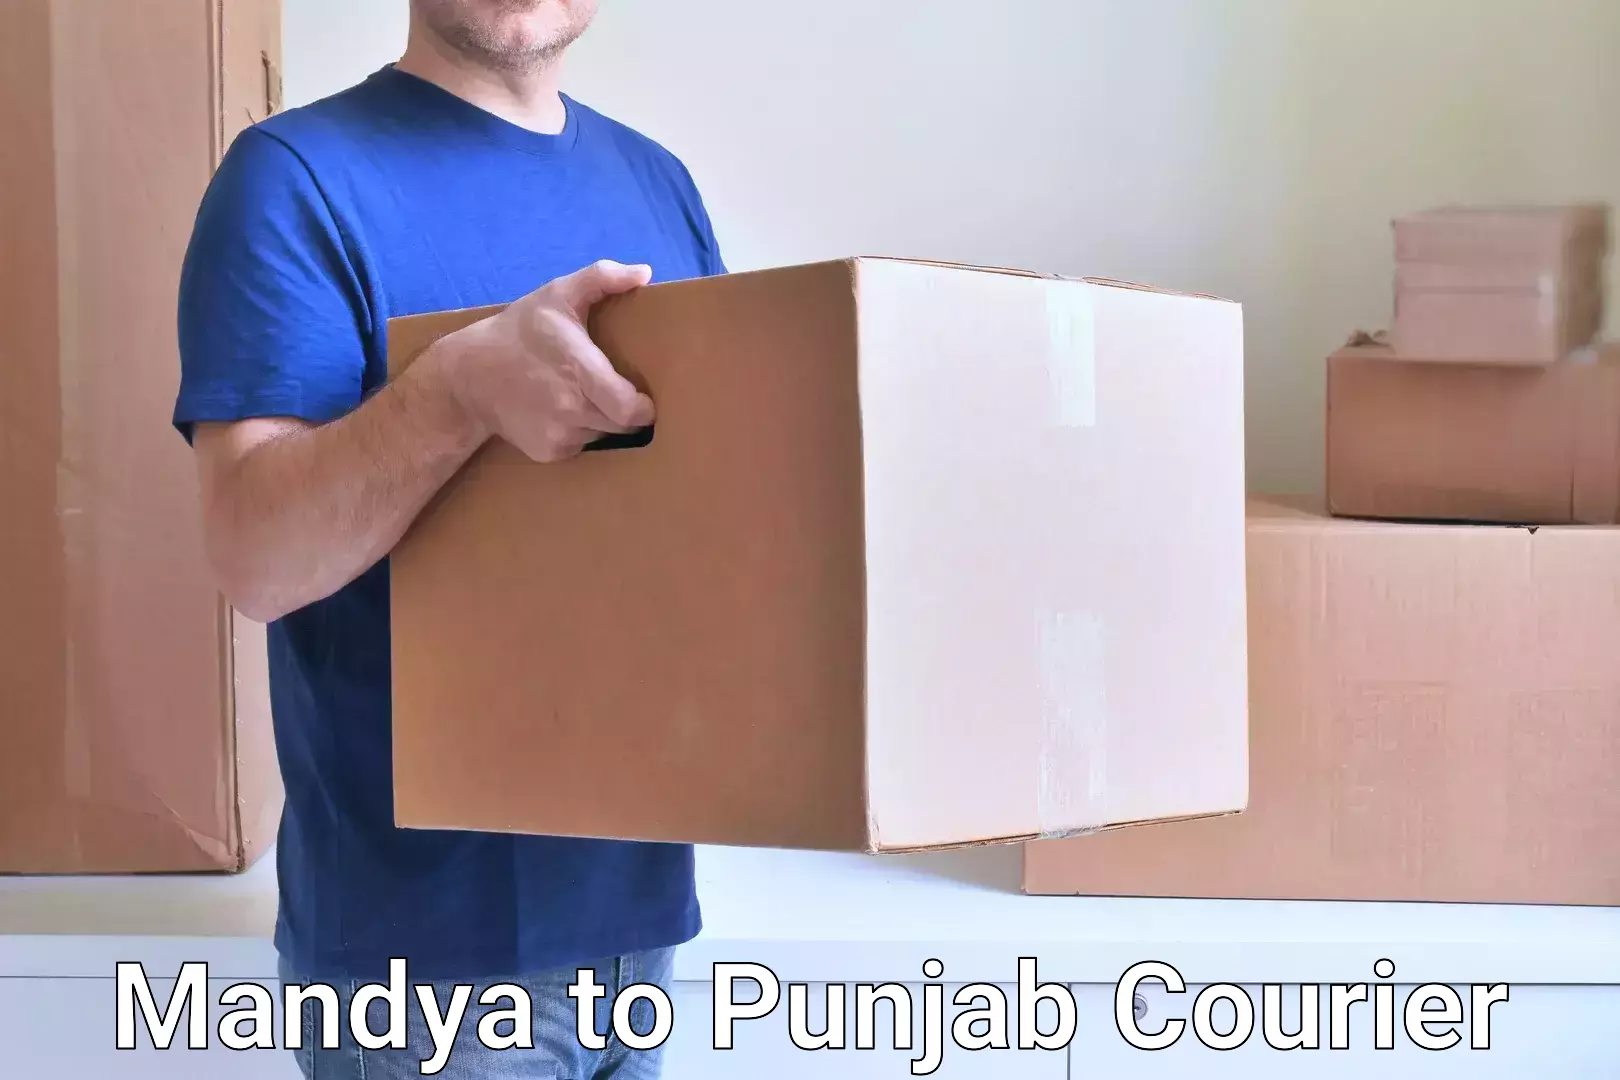 Customer-centric shipping Mandya to Talwara